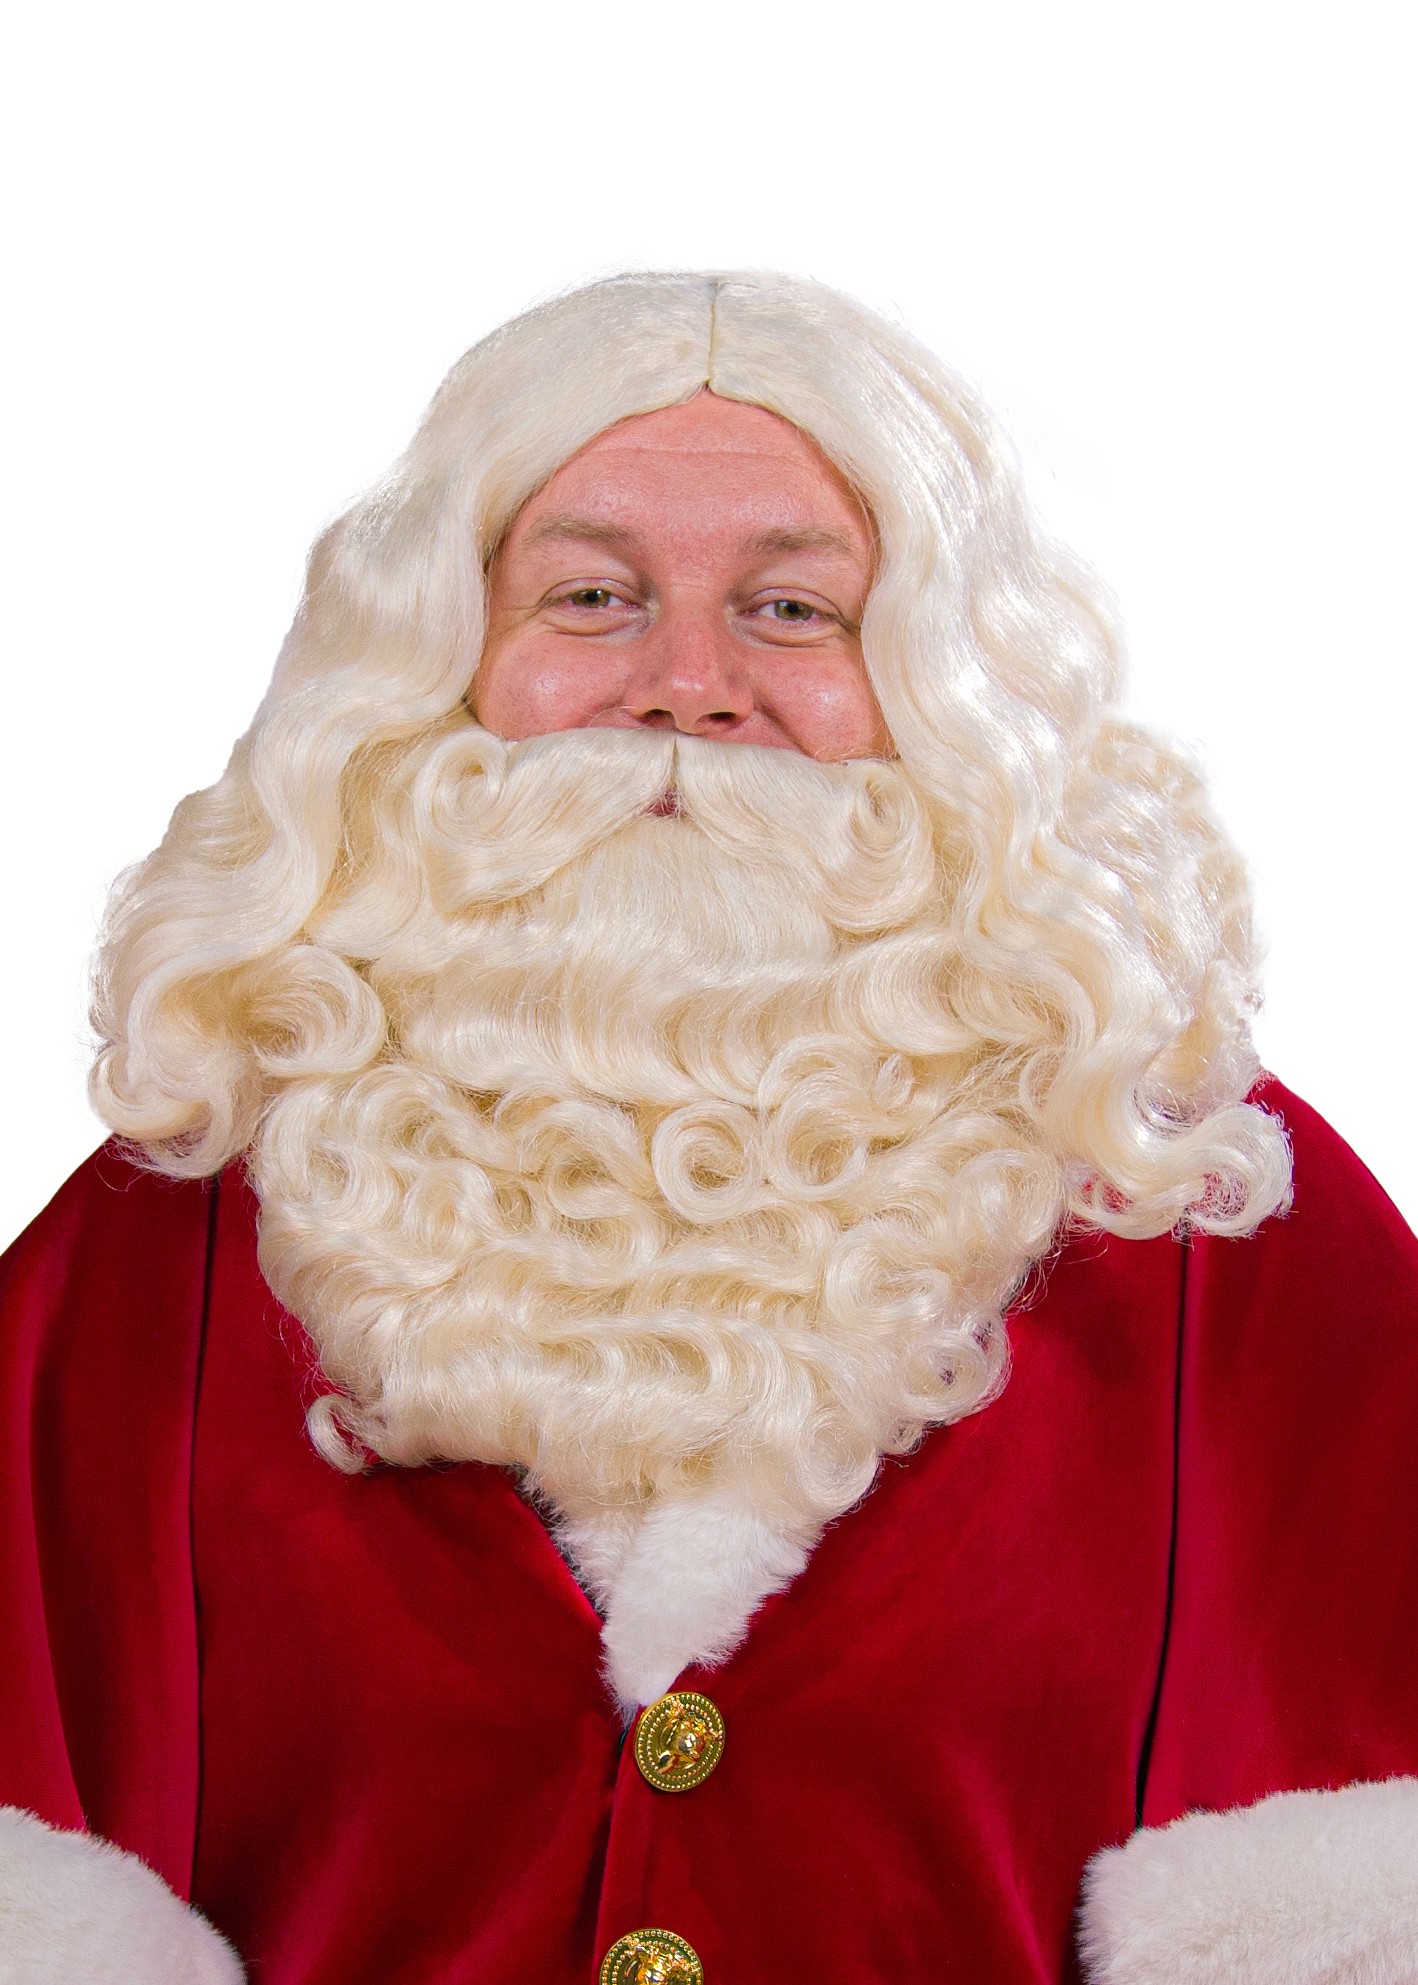 Pruik en Baard Kerstman kanekalon deluxe - Willaert, verkleedkledij, carnavalkledij, carnavaloutfit, feestkledij, Kerstman, Kerst, Kerstboom, 25 december, Kerstmis, kerstavond, kerstman, kerstvrouw, helper